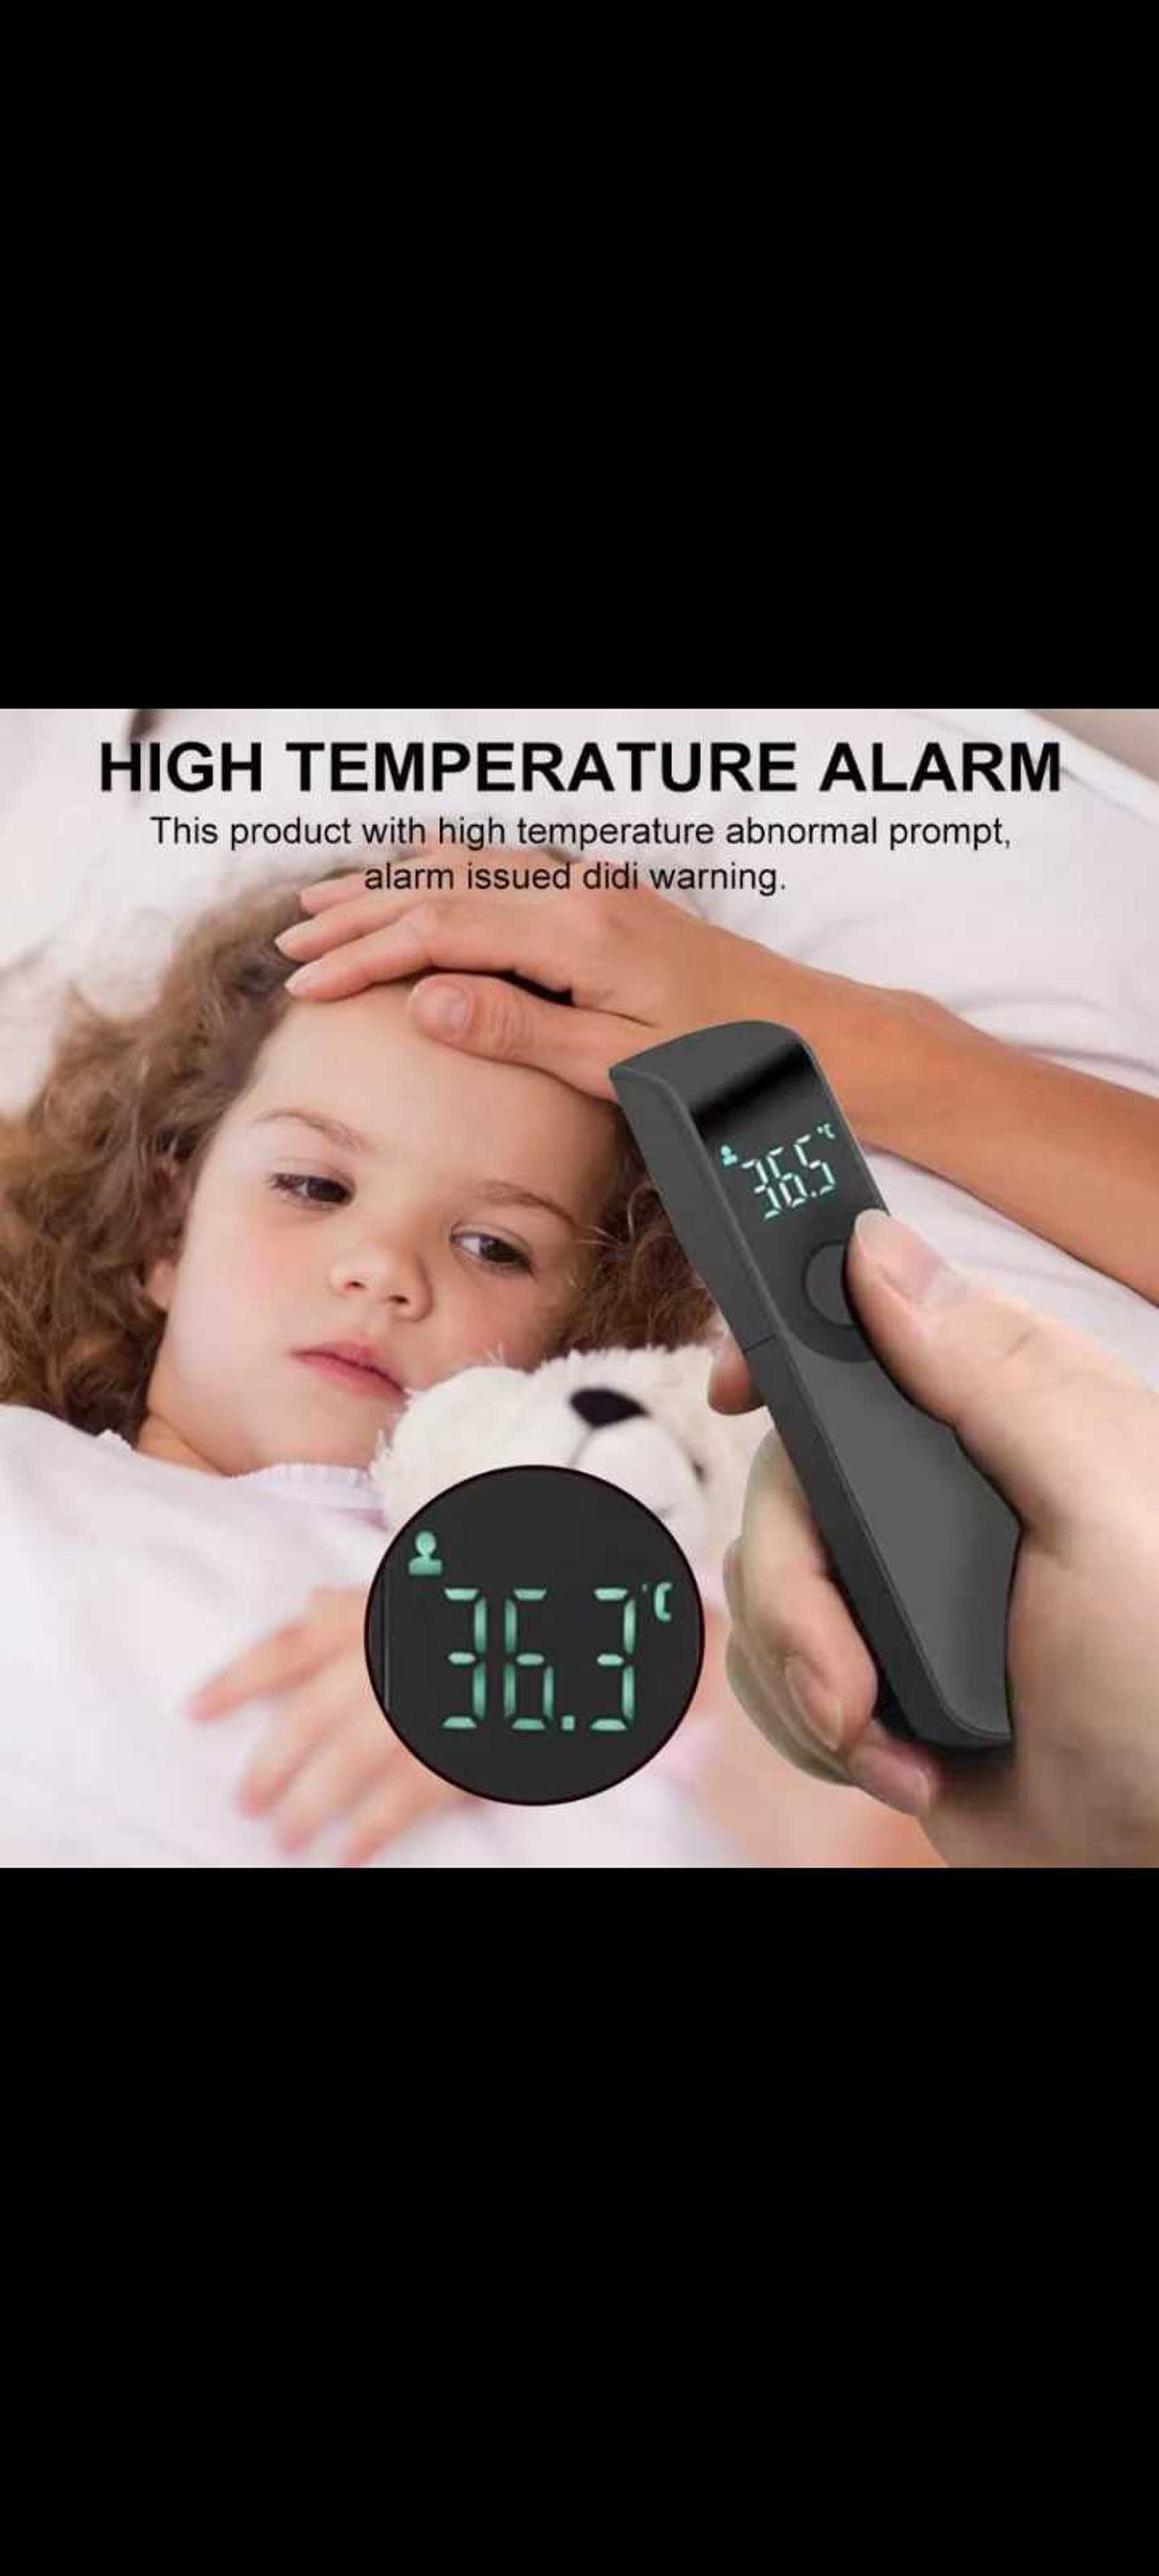 High temperature alarm machine